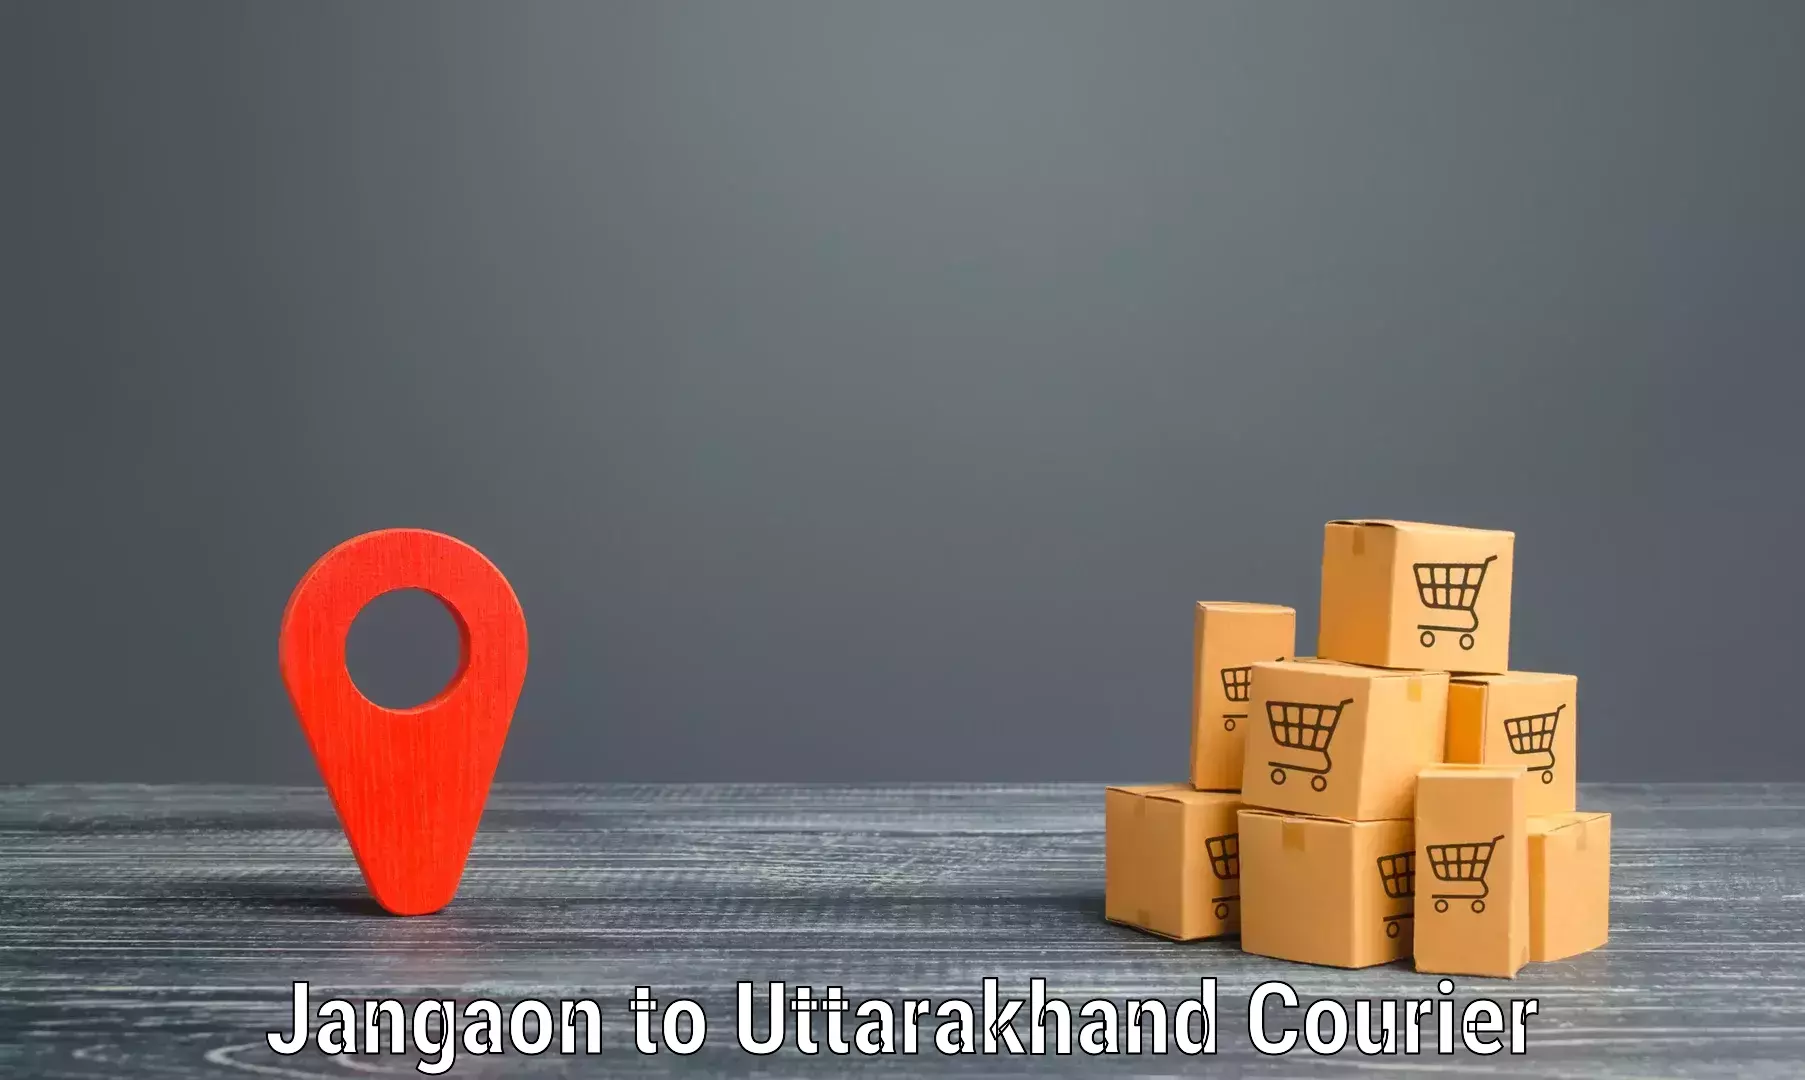 Premium courier solutions Jangaon to Rishikesh